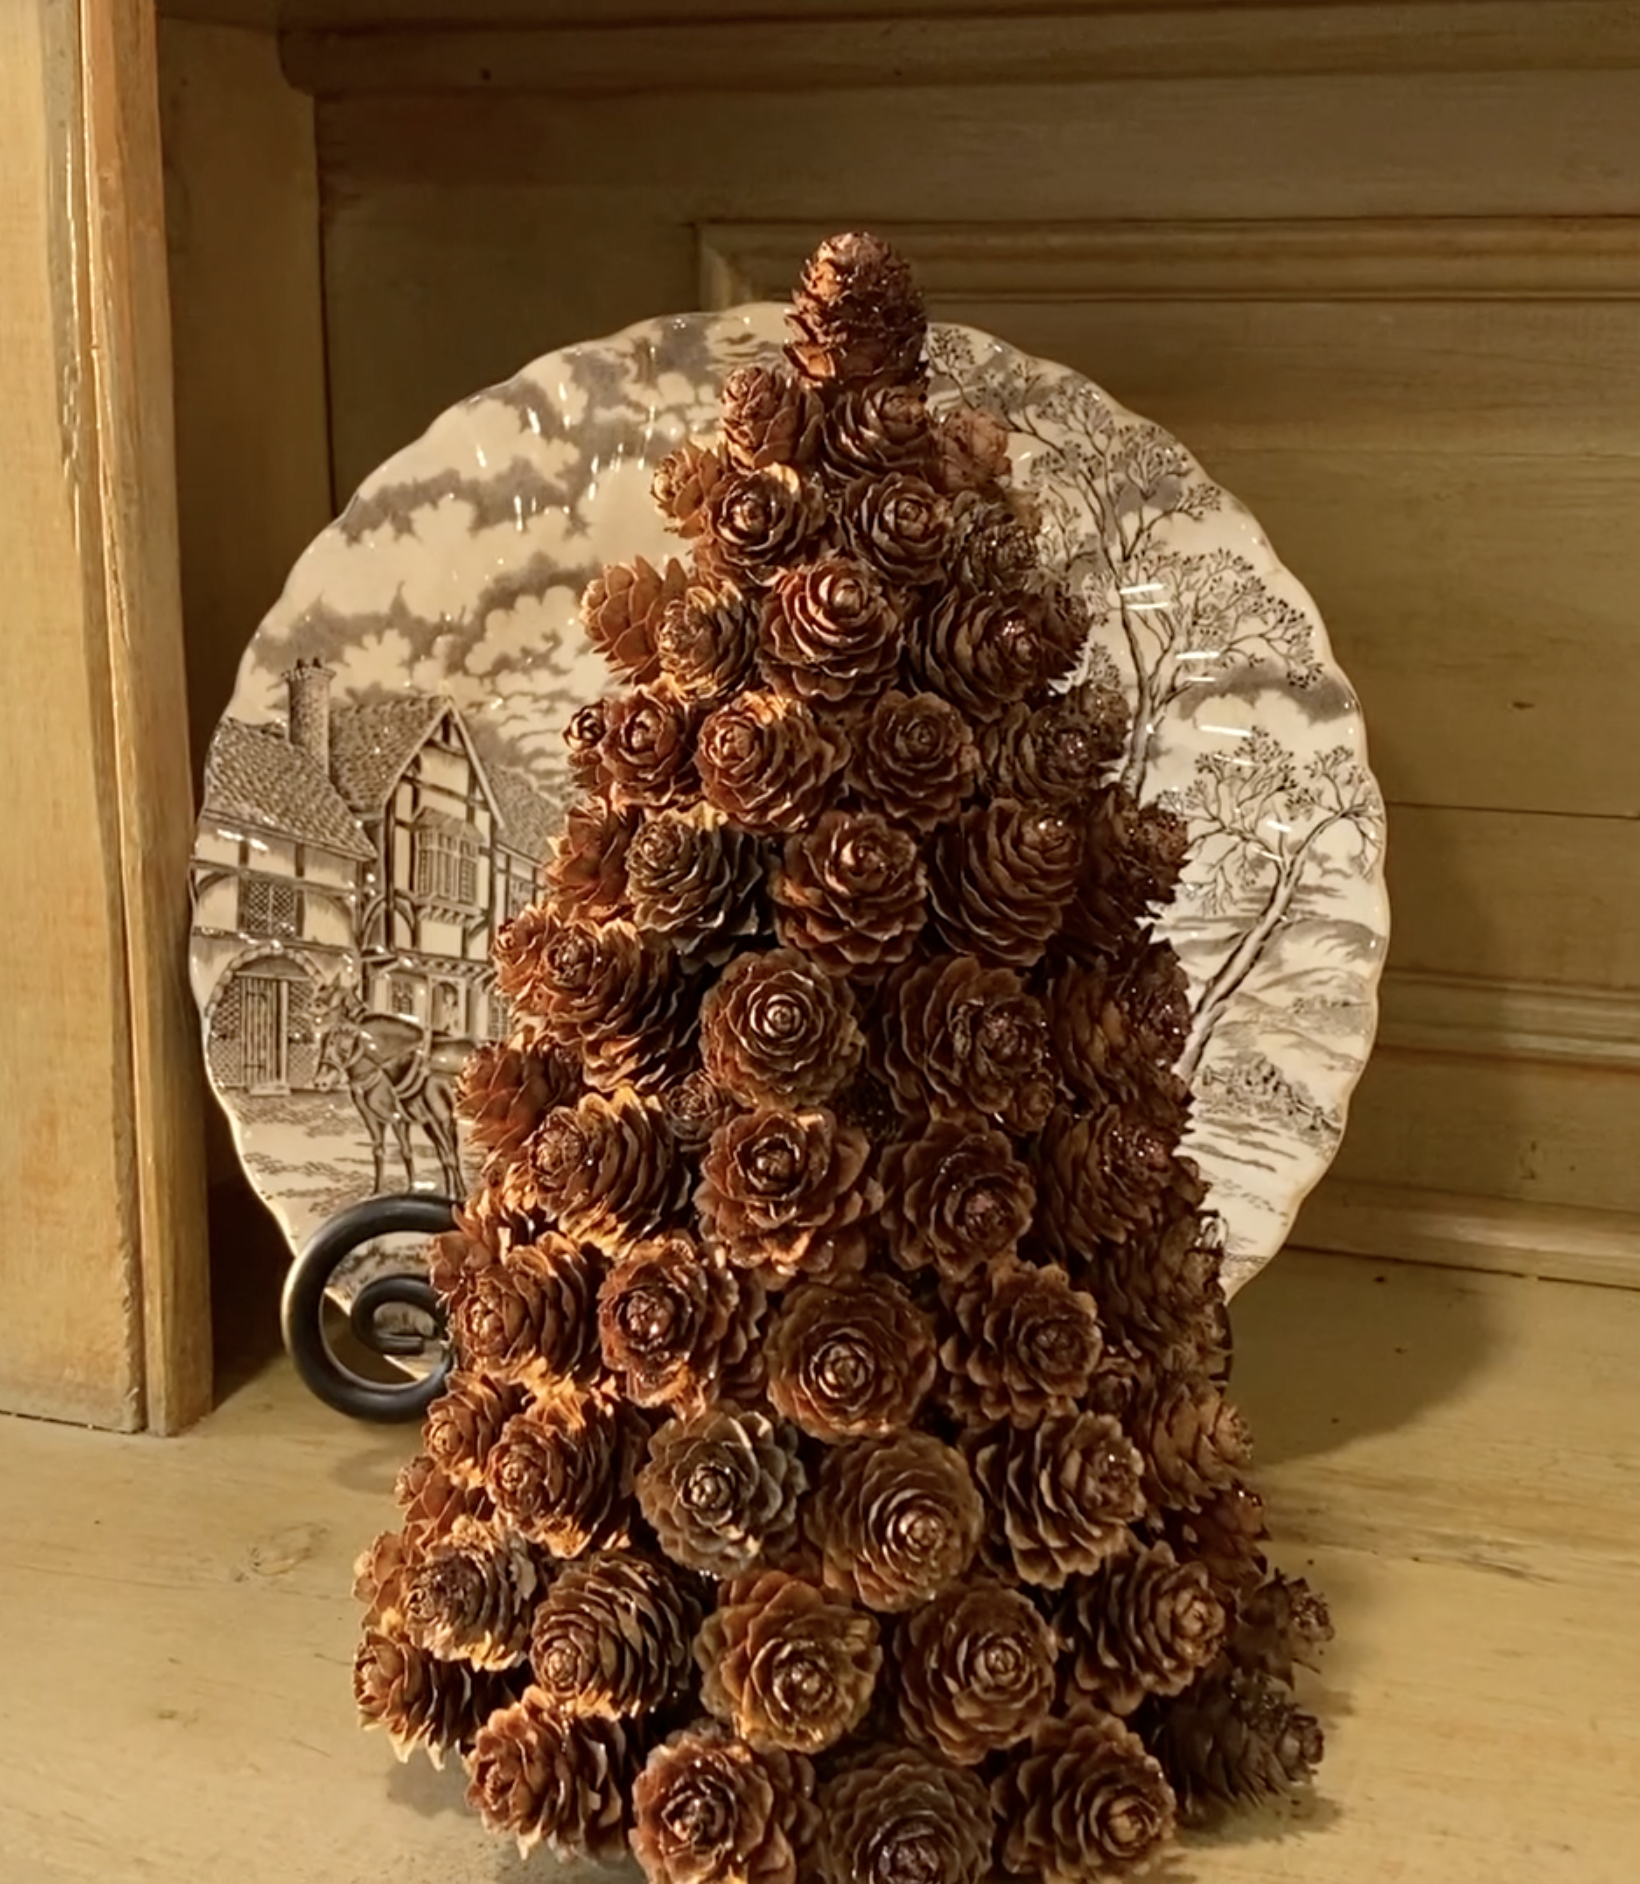 How to make a pine cone Christmas tree DIY tutorial - LINDA DAVIS - NEFL